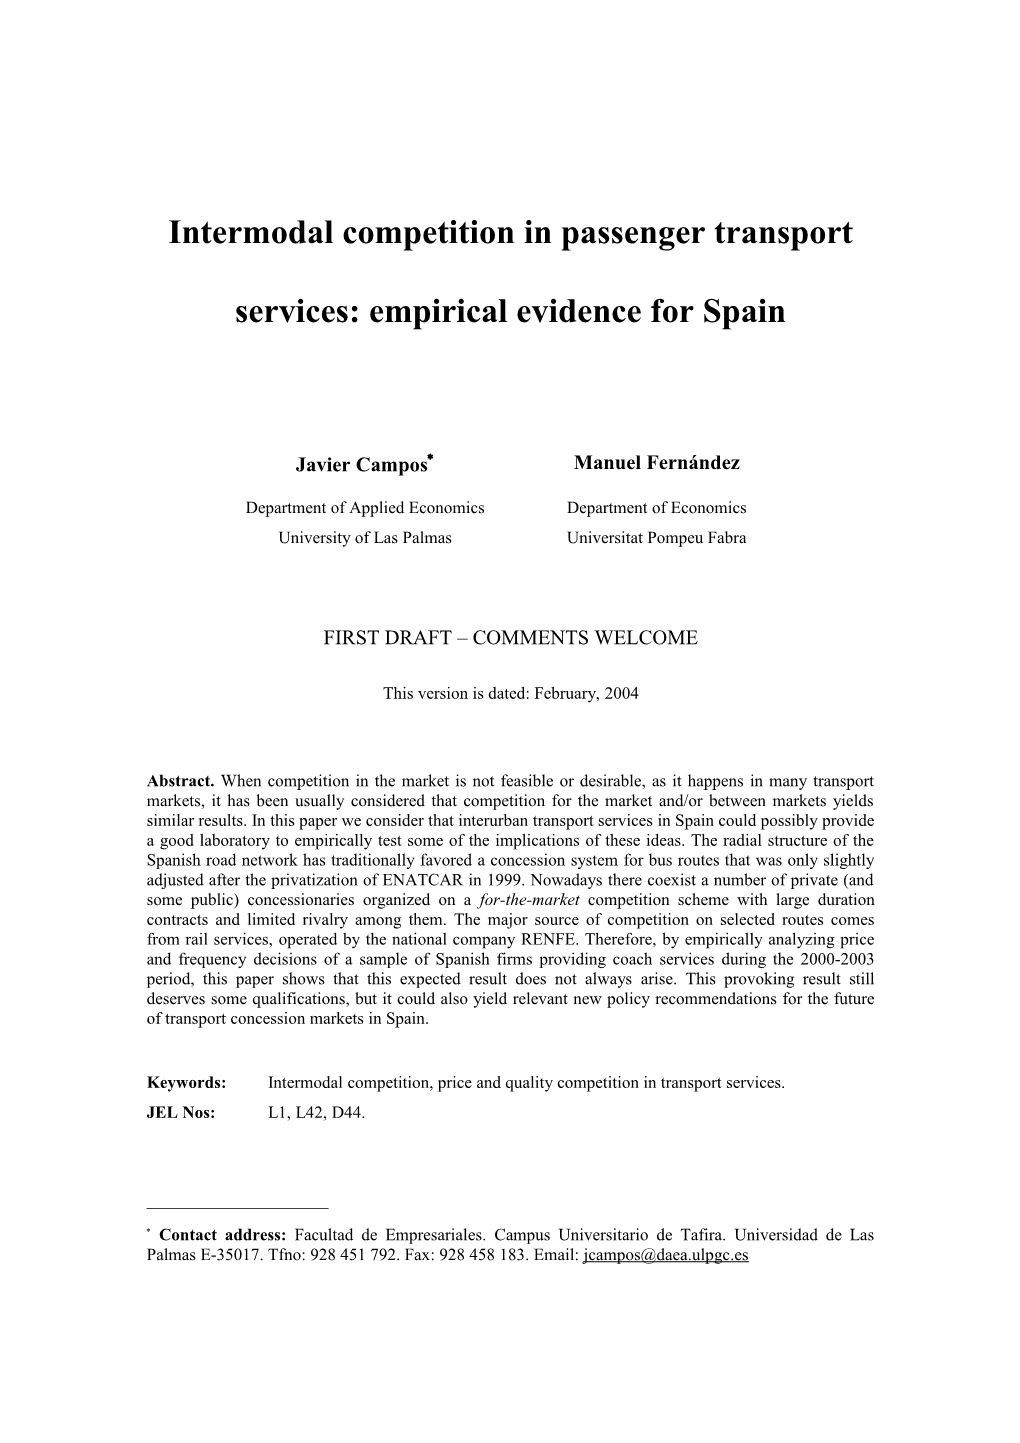 Intermodal Competition in Interurban Transport